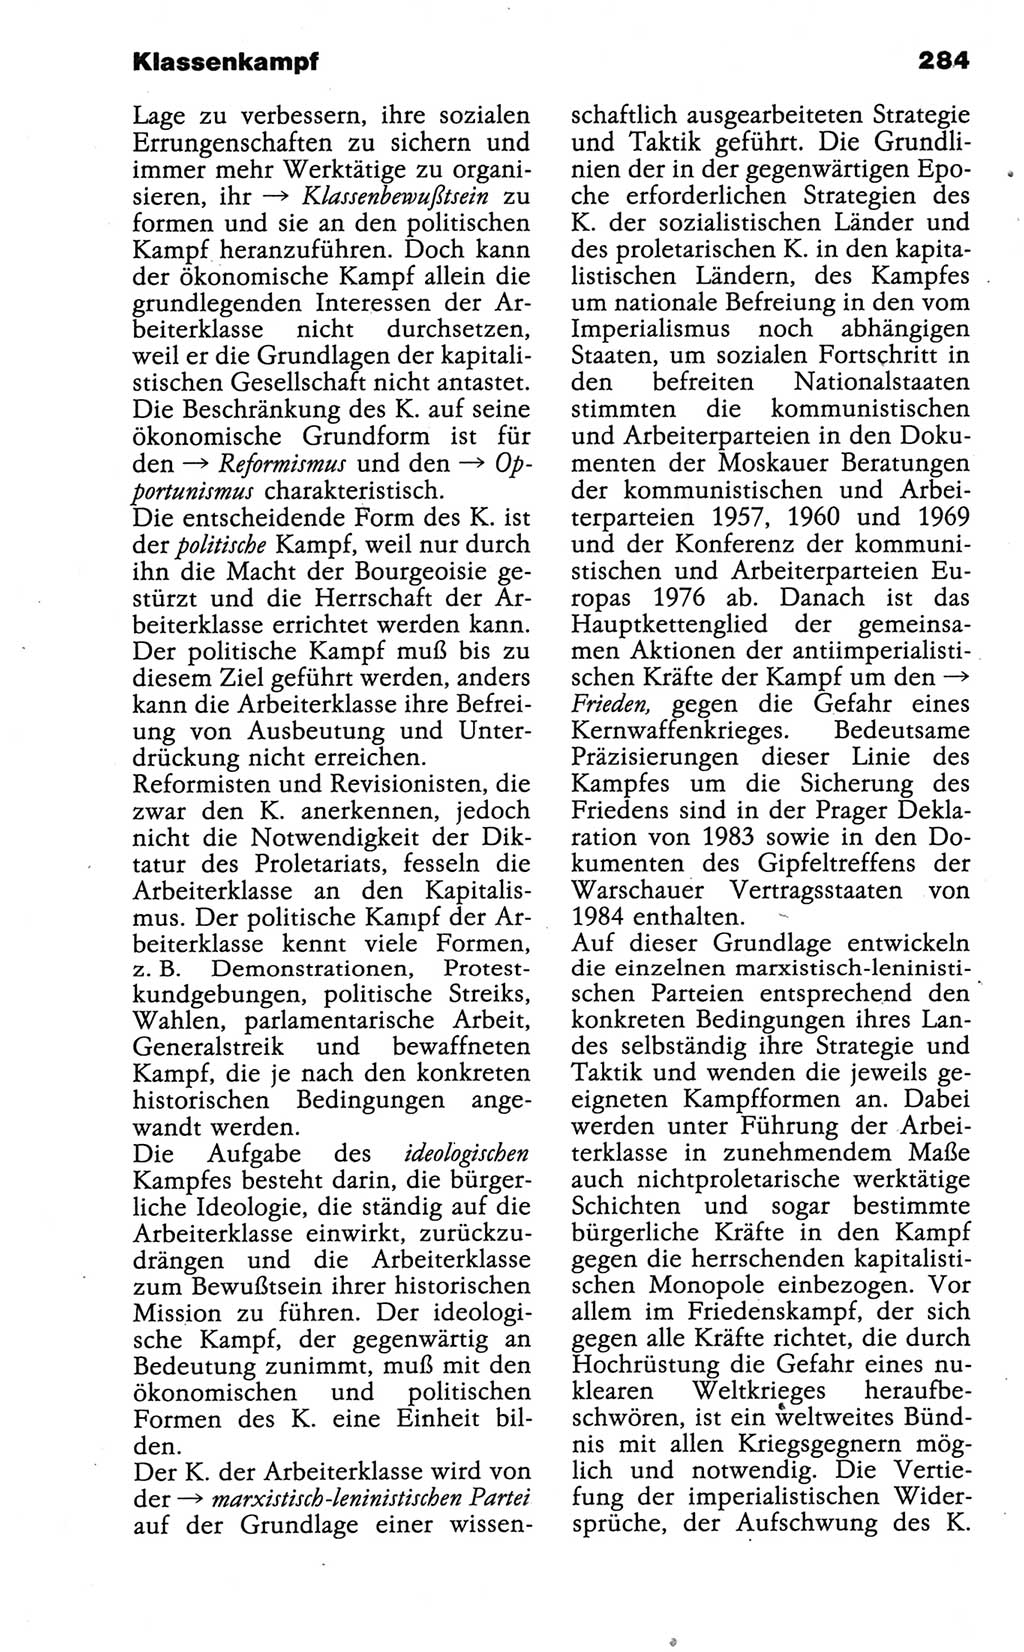 Wörterbuch der marxistisch-leninistischen Philosophie [Deutsche Demokratische Republik (DDR)] 1986, Seite 284 (Wb. ML Phil. DDR 1986, S. 284)